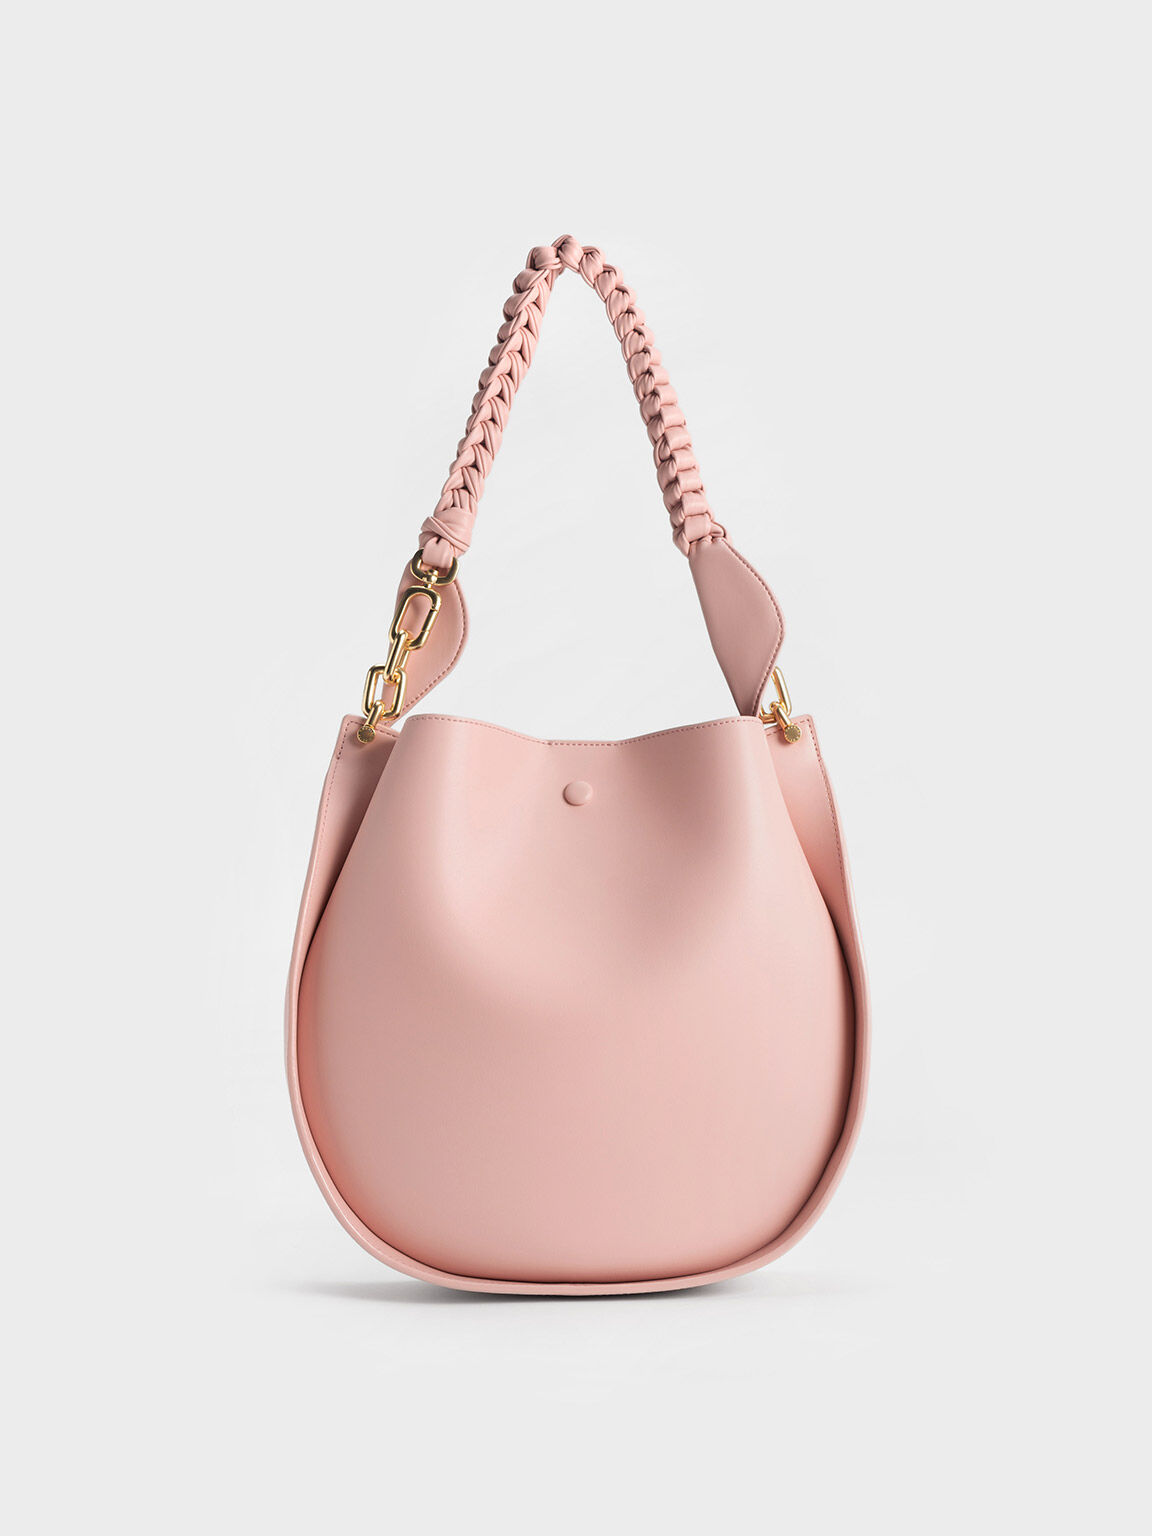 Cleona Braided Handle Shoulder Bag, Light Pink, hi-res